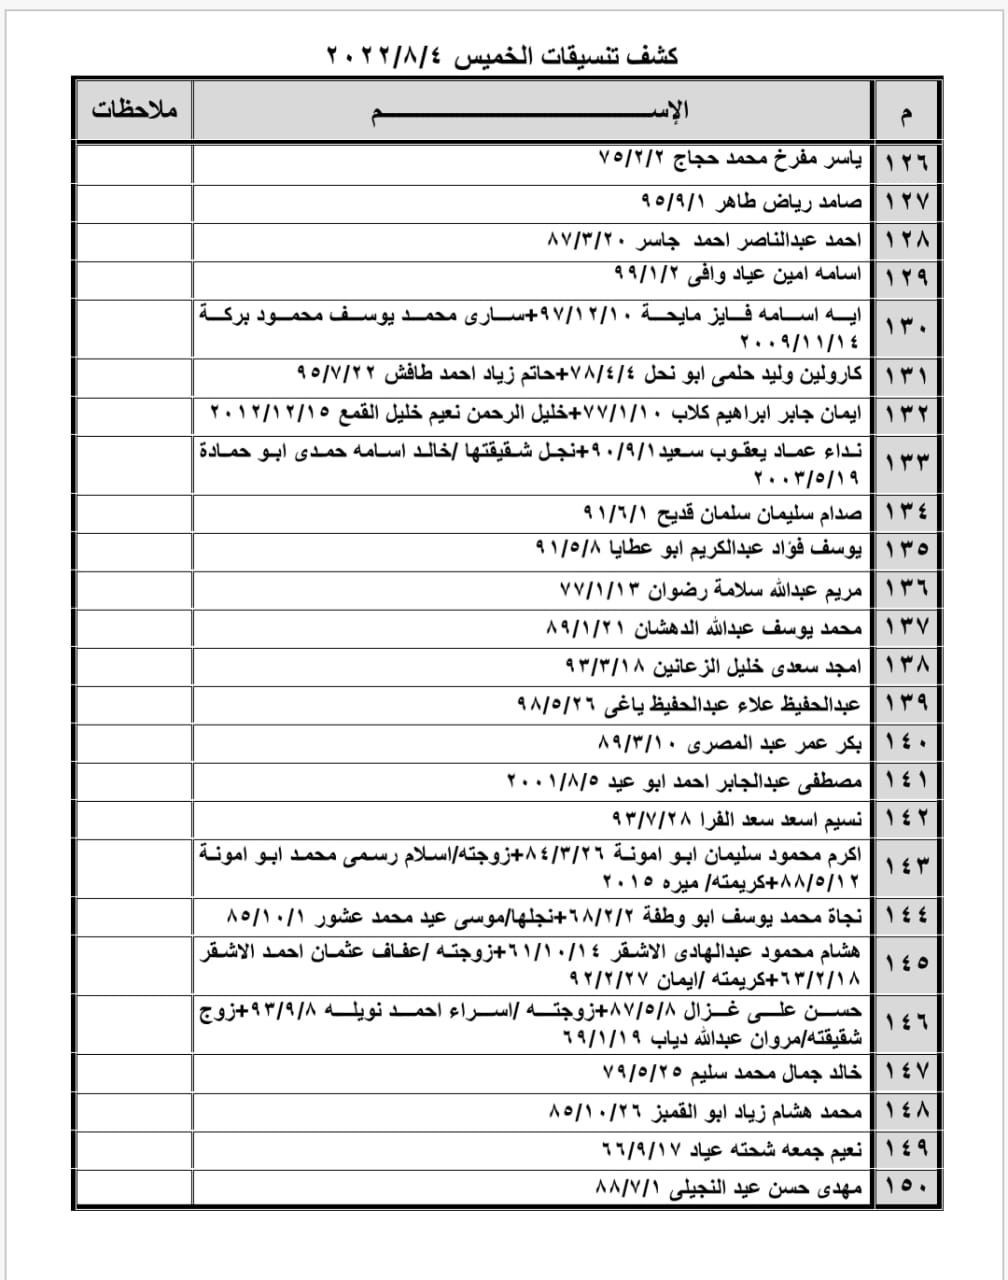 بالأسماء: داخلية غزة تنشر "كشف تنسيقات مصرية" للسفر عبر معبر رفح الخميس 4 أغسطس 2022